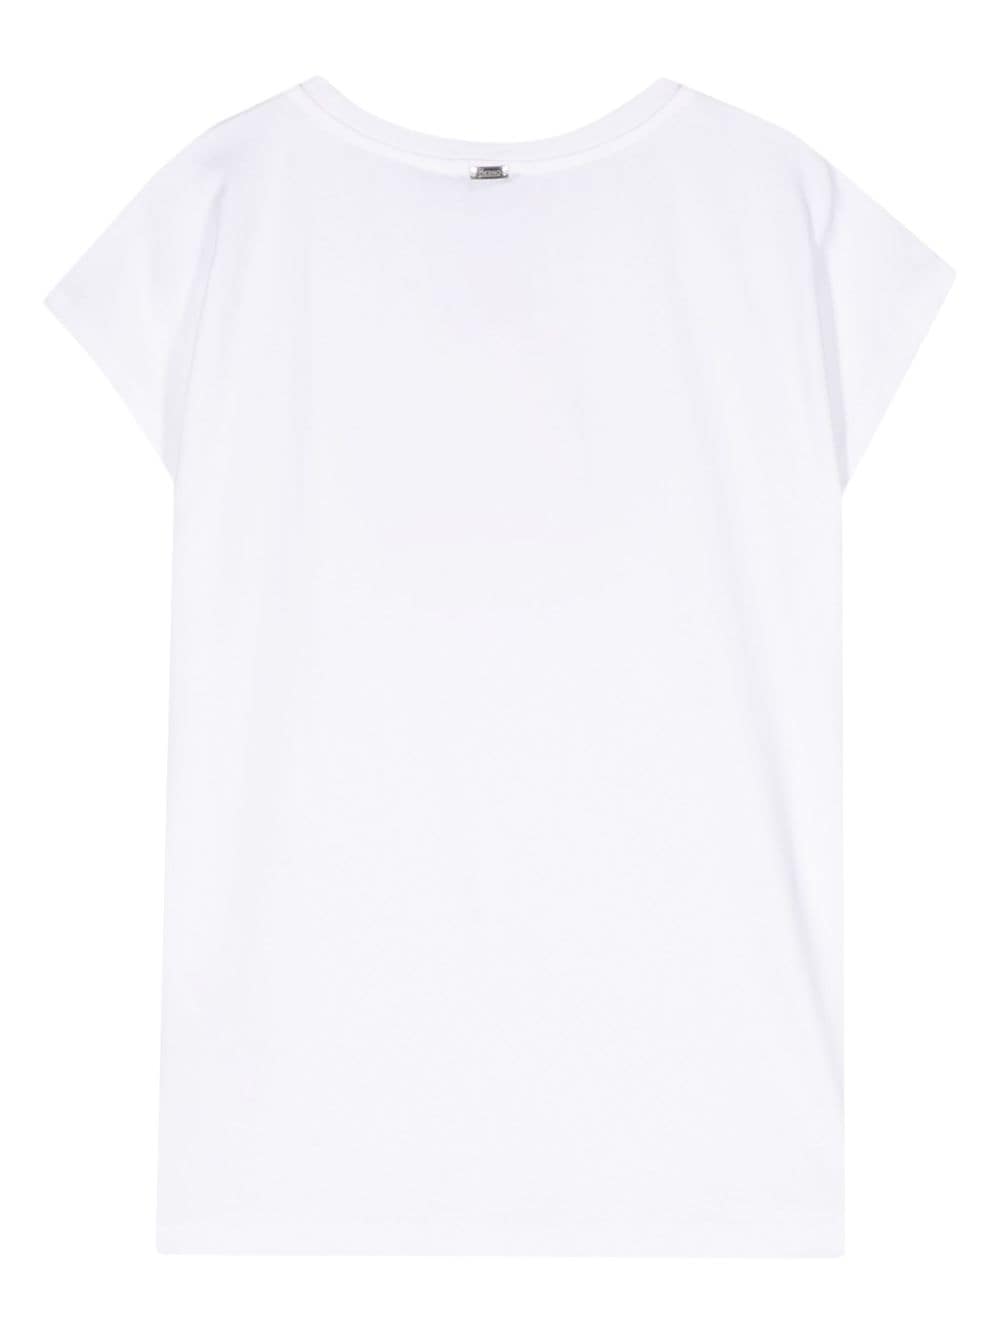 Herno T-shirt met logo van studs - Wit